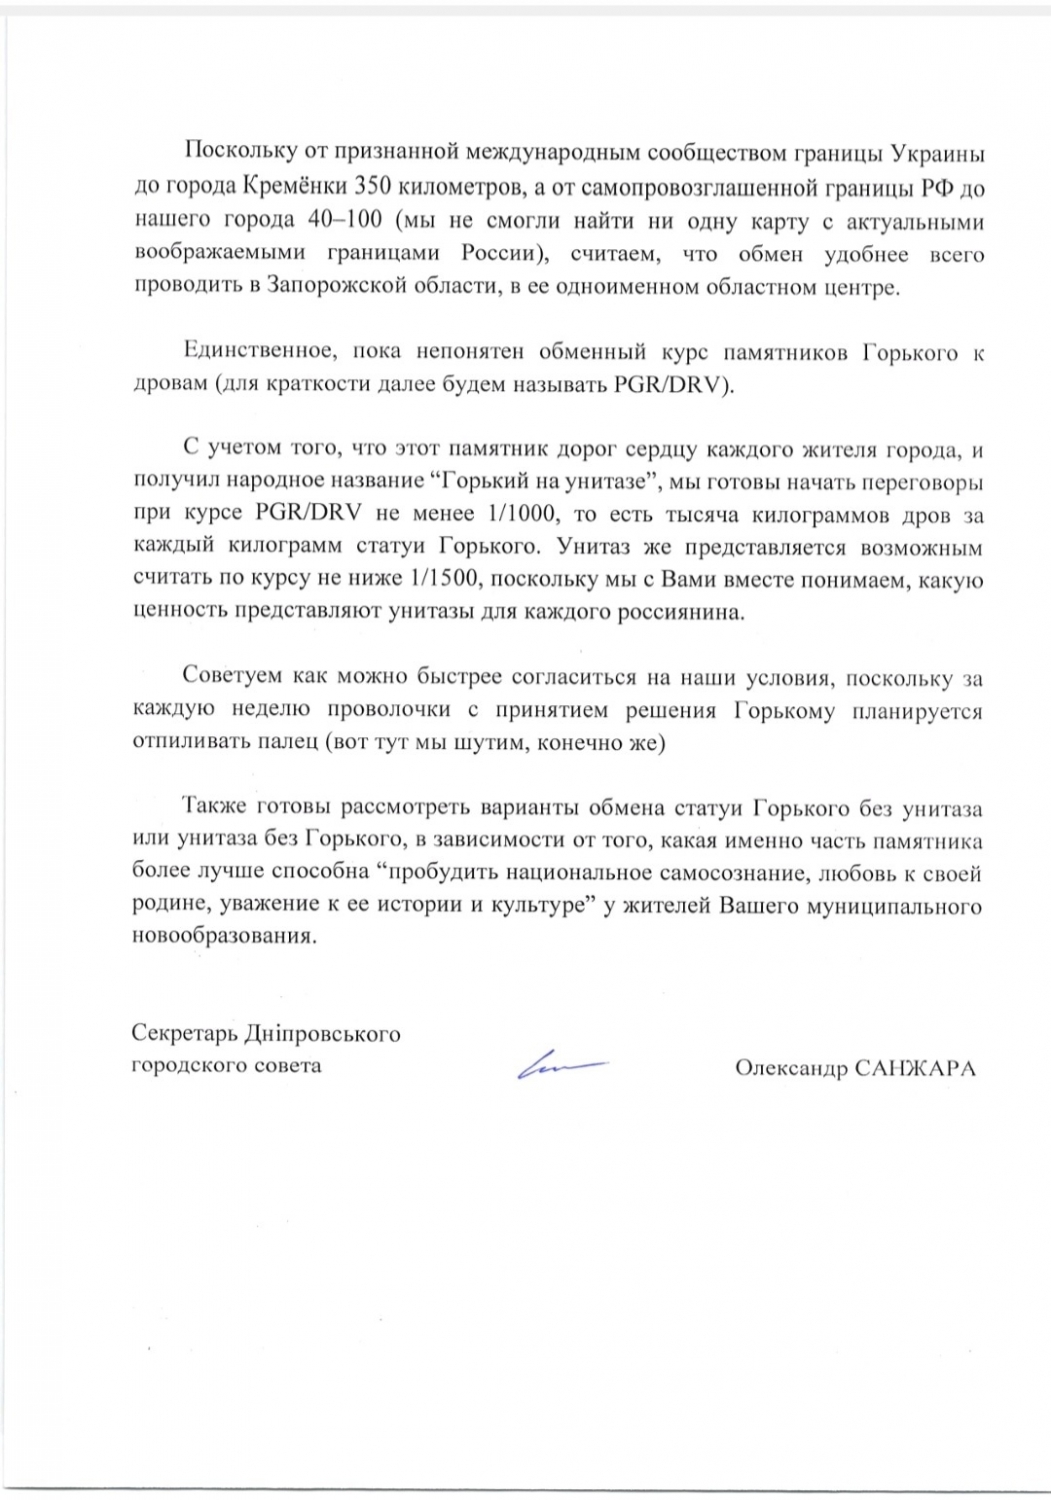 Глава Кремёнок предложил мэру Днепропетровска обменять снесенные памятники на дрова